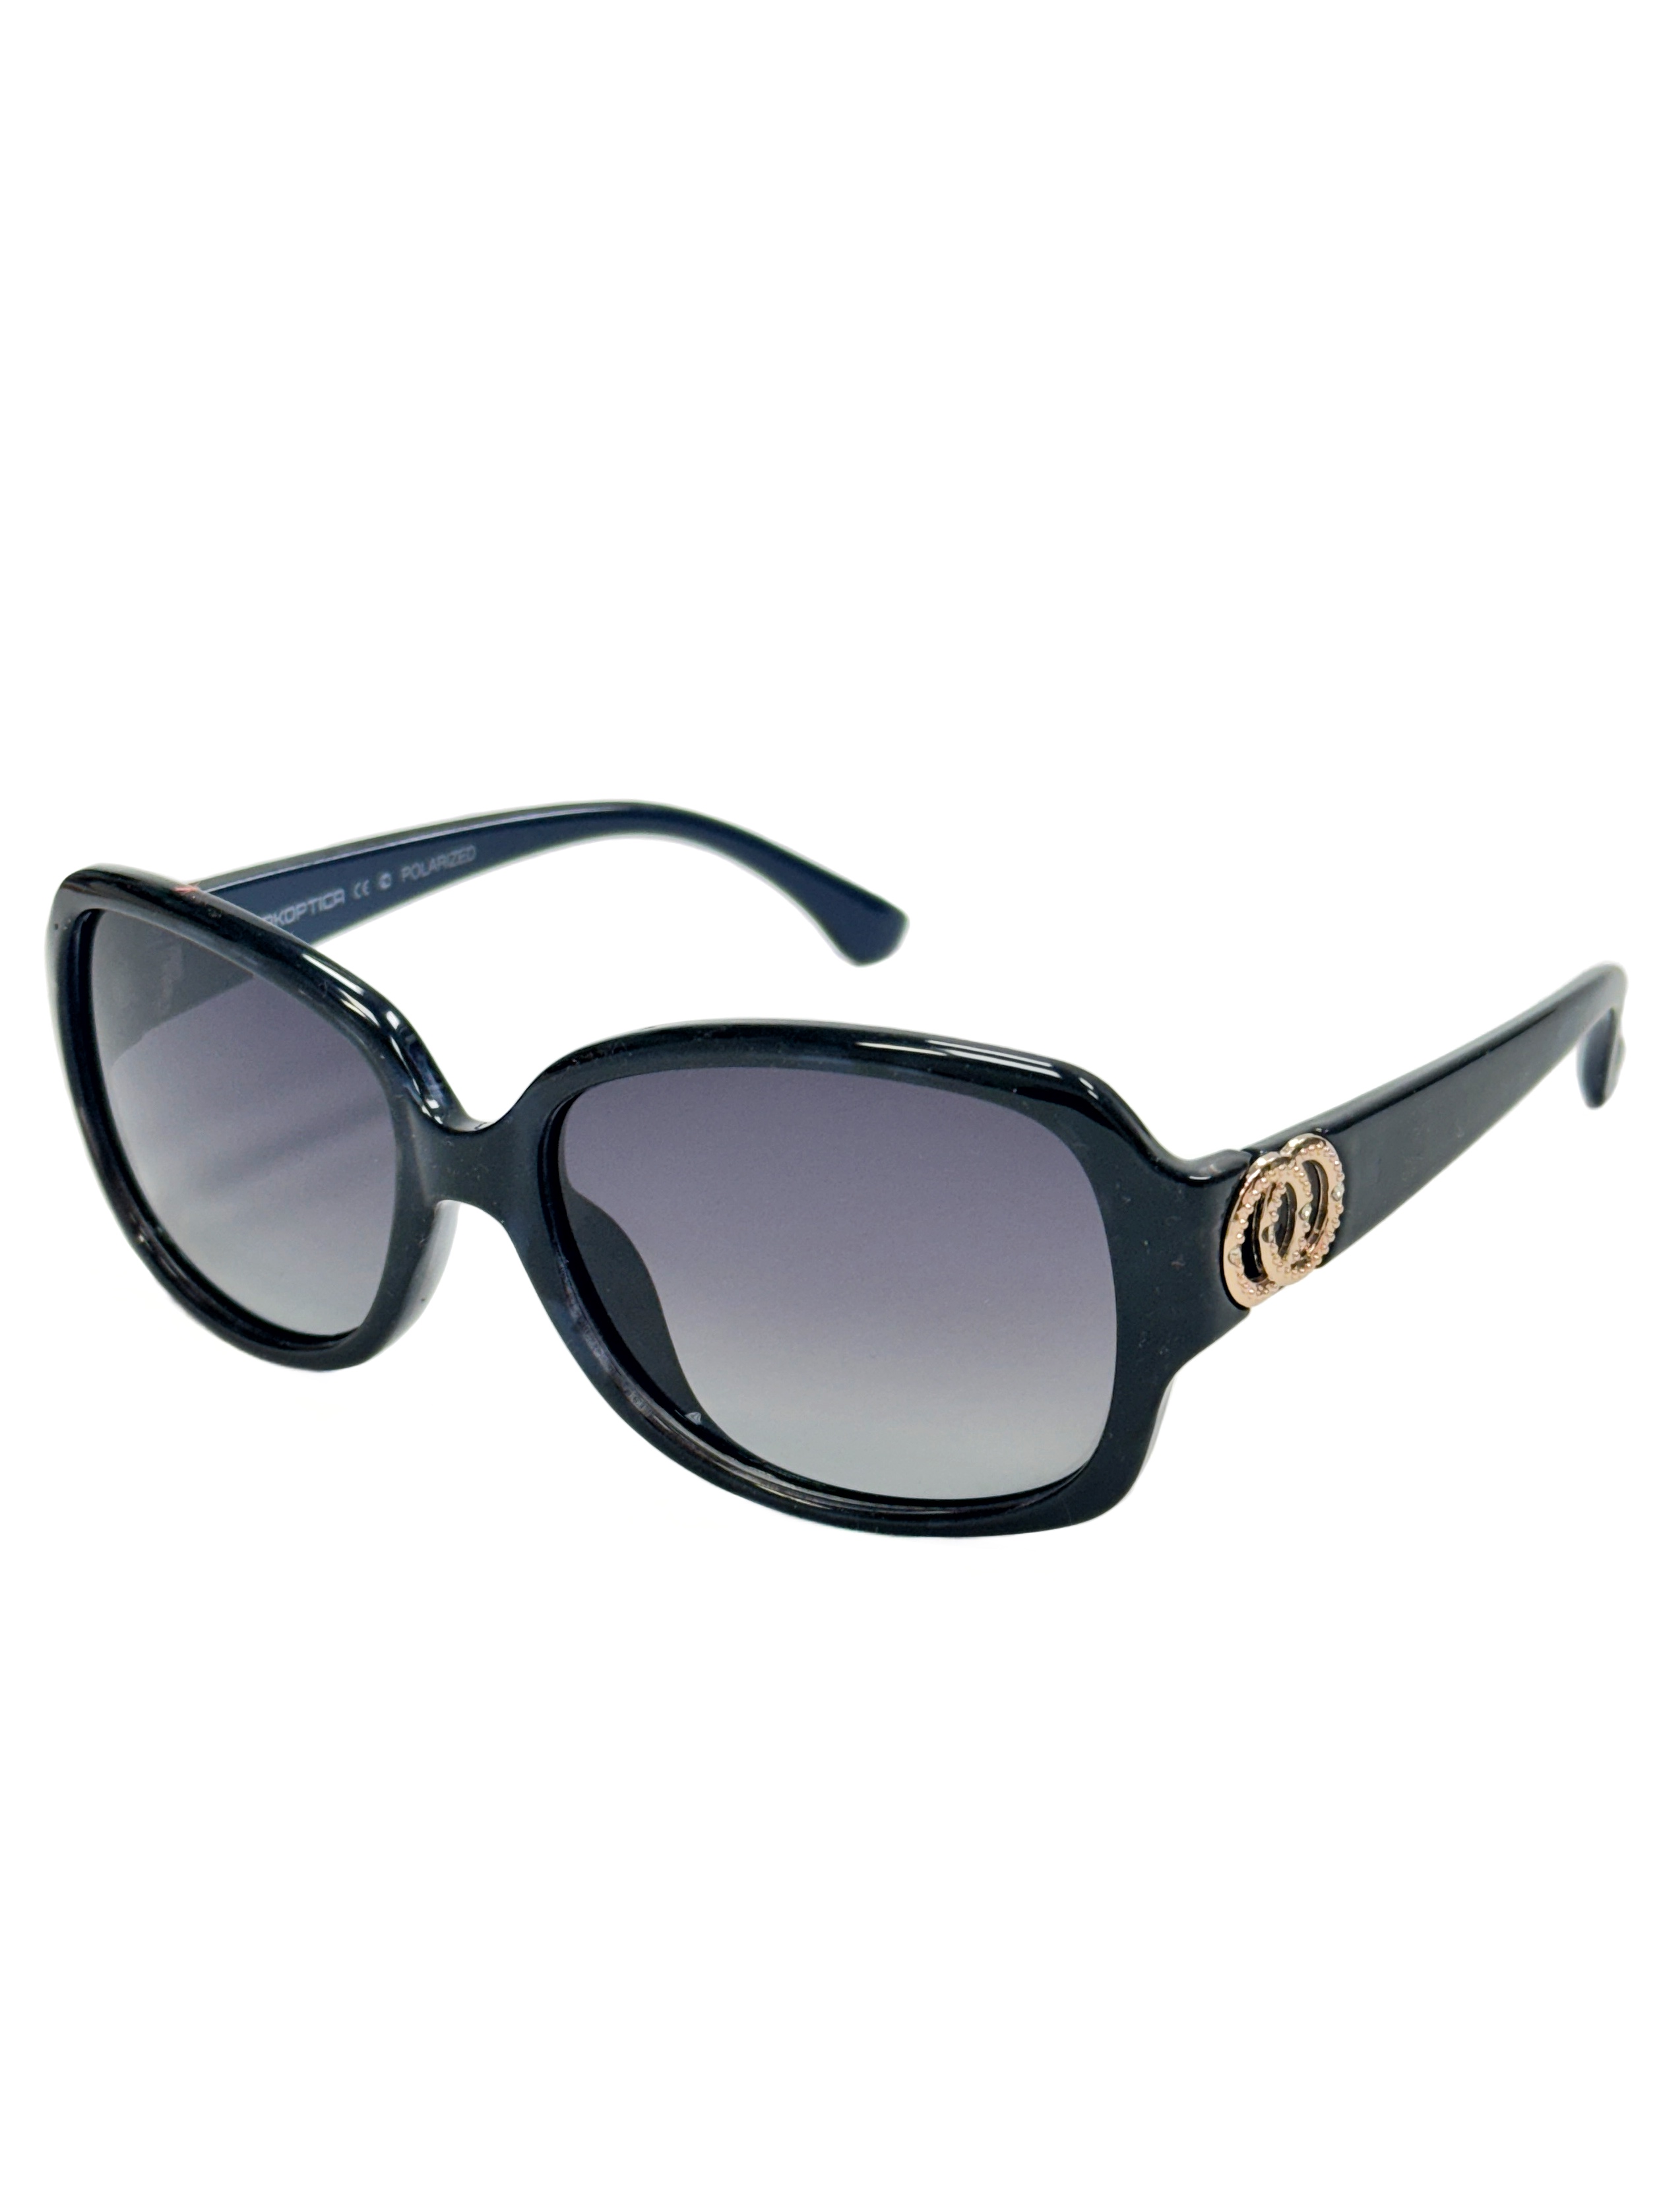 Солнцезащитные очки женские OPK.OPTICA 6167 серые